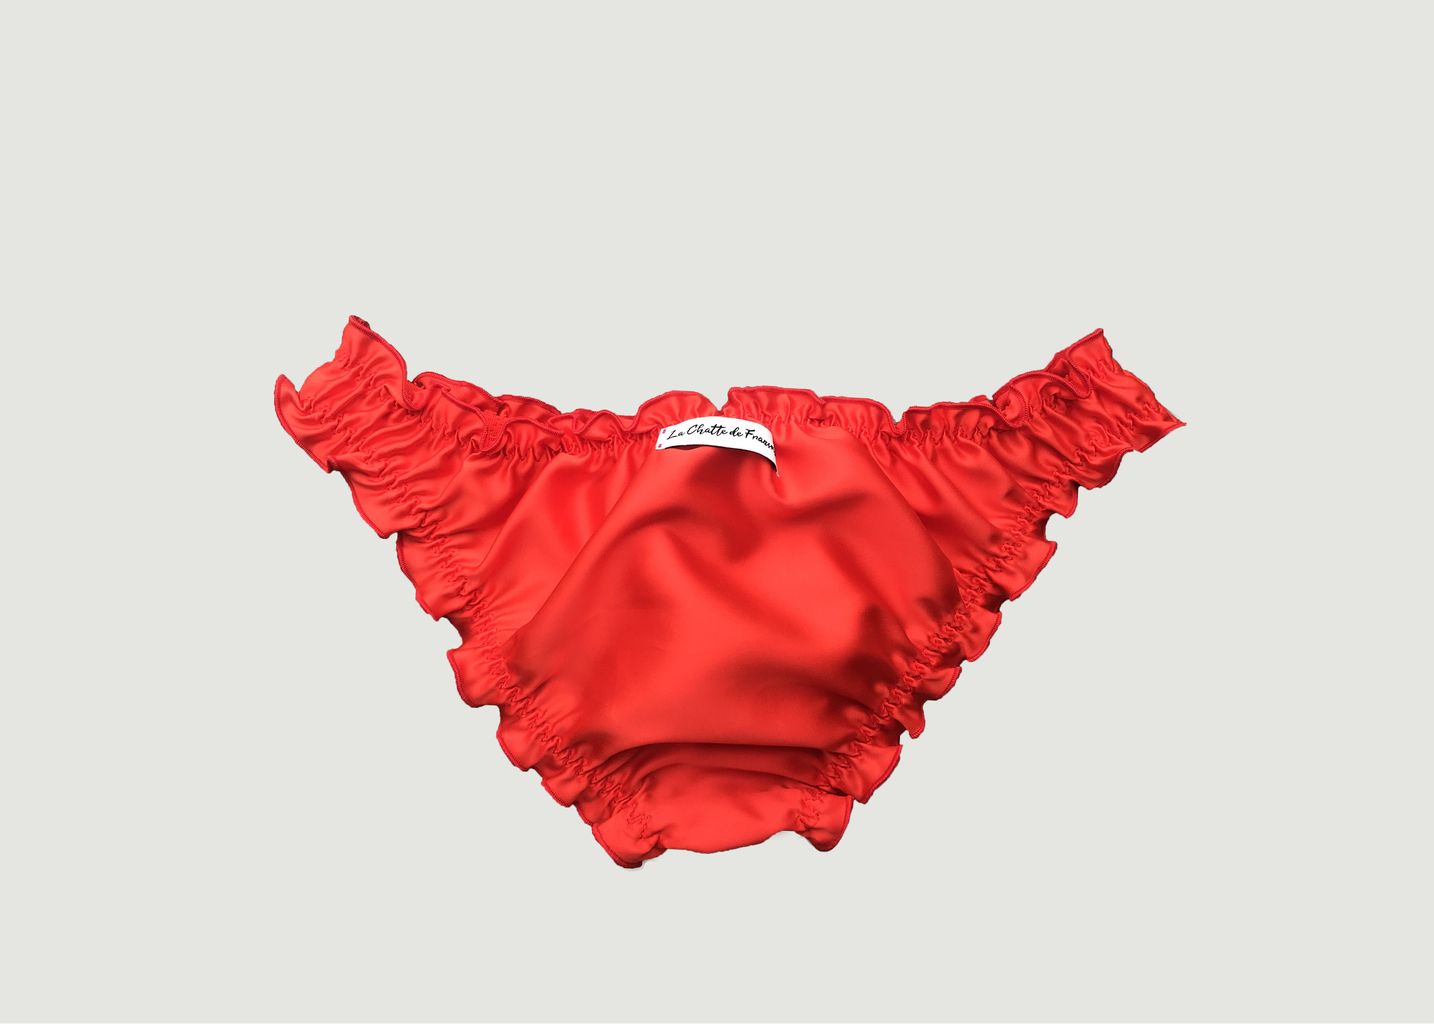 Red satin panties - La chatte de Françoise